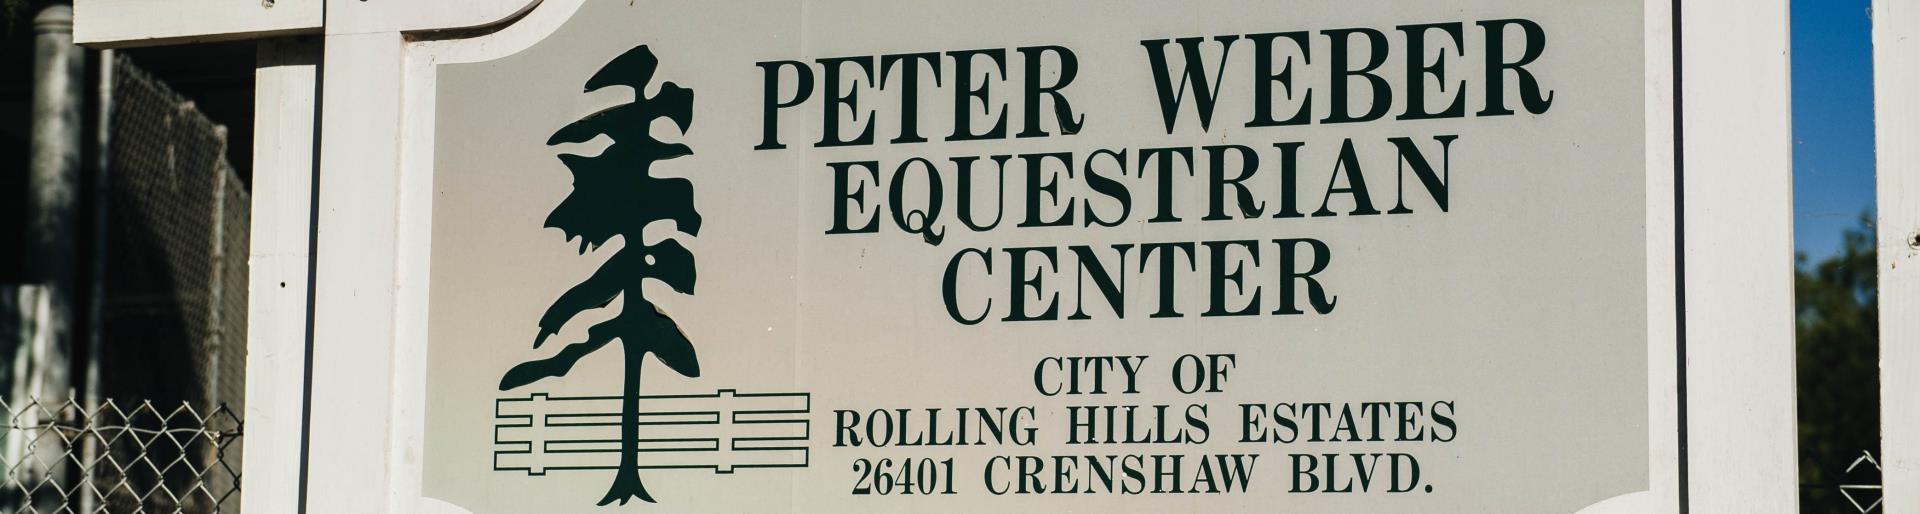 Peter Weber Equestrian Center